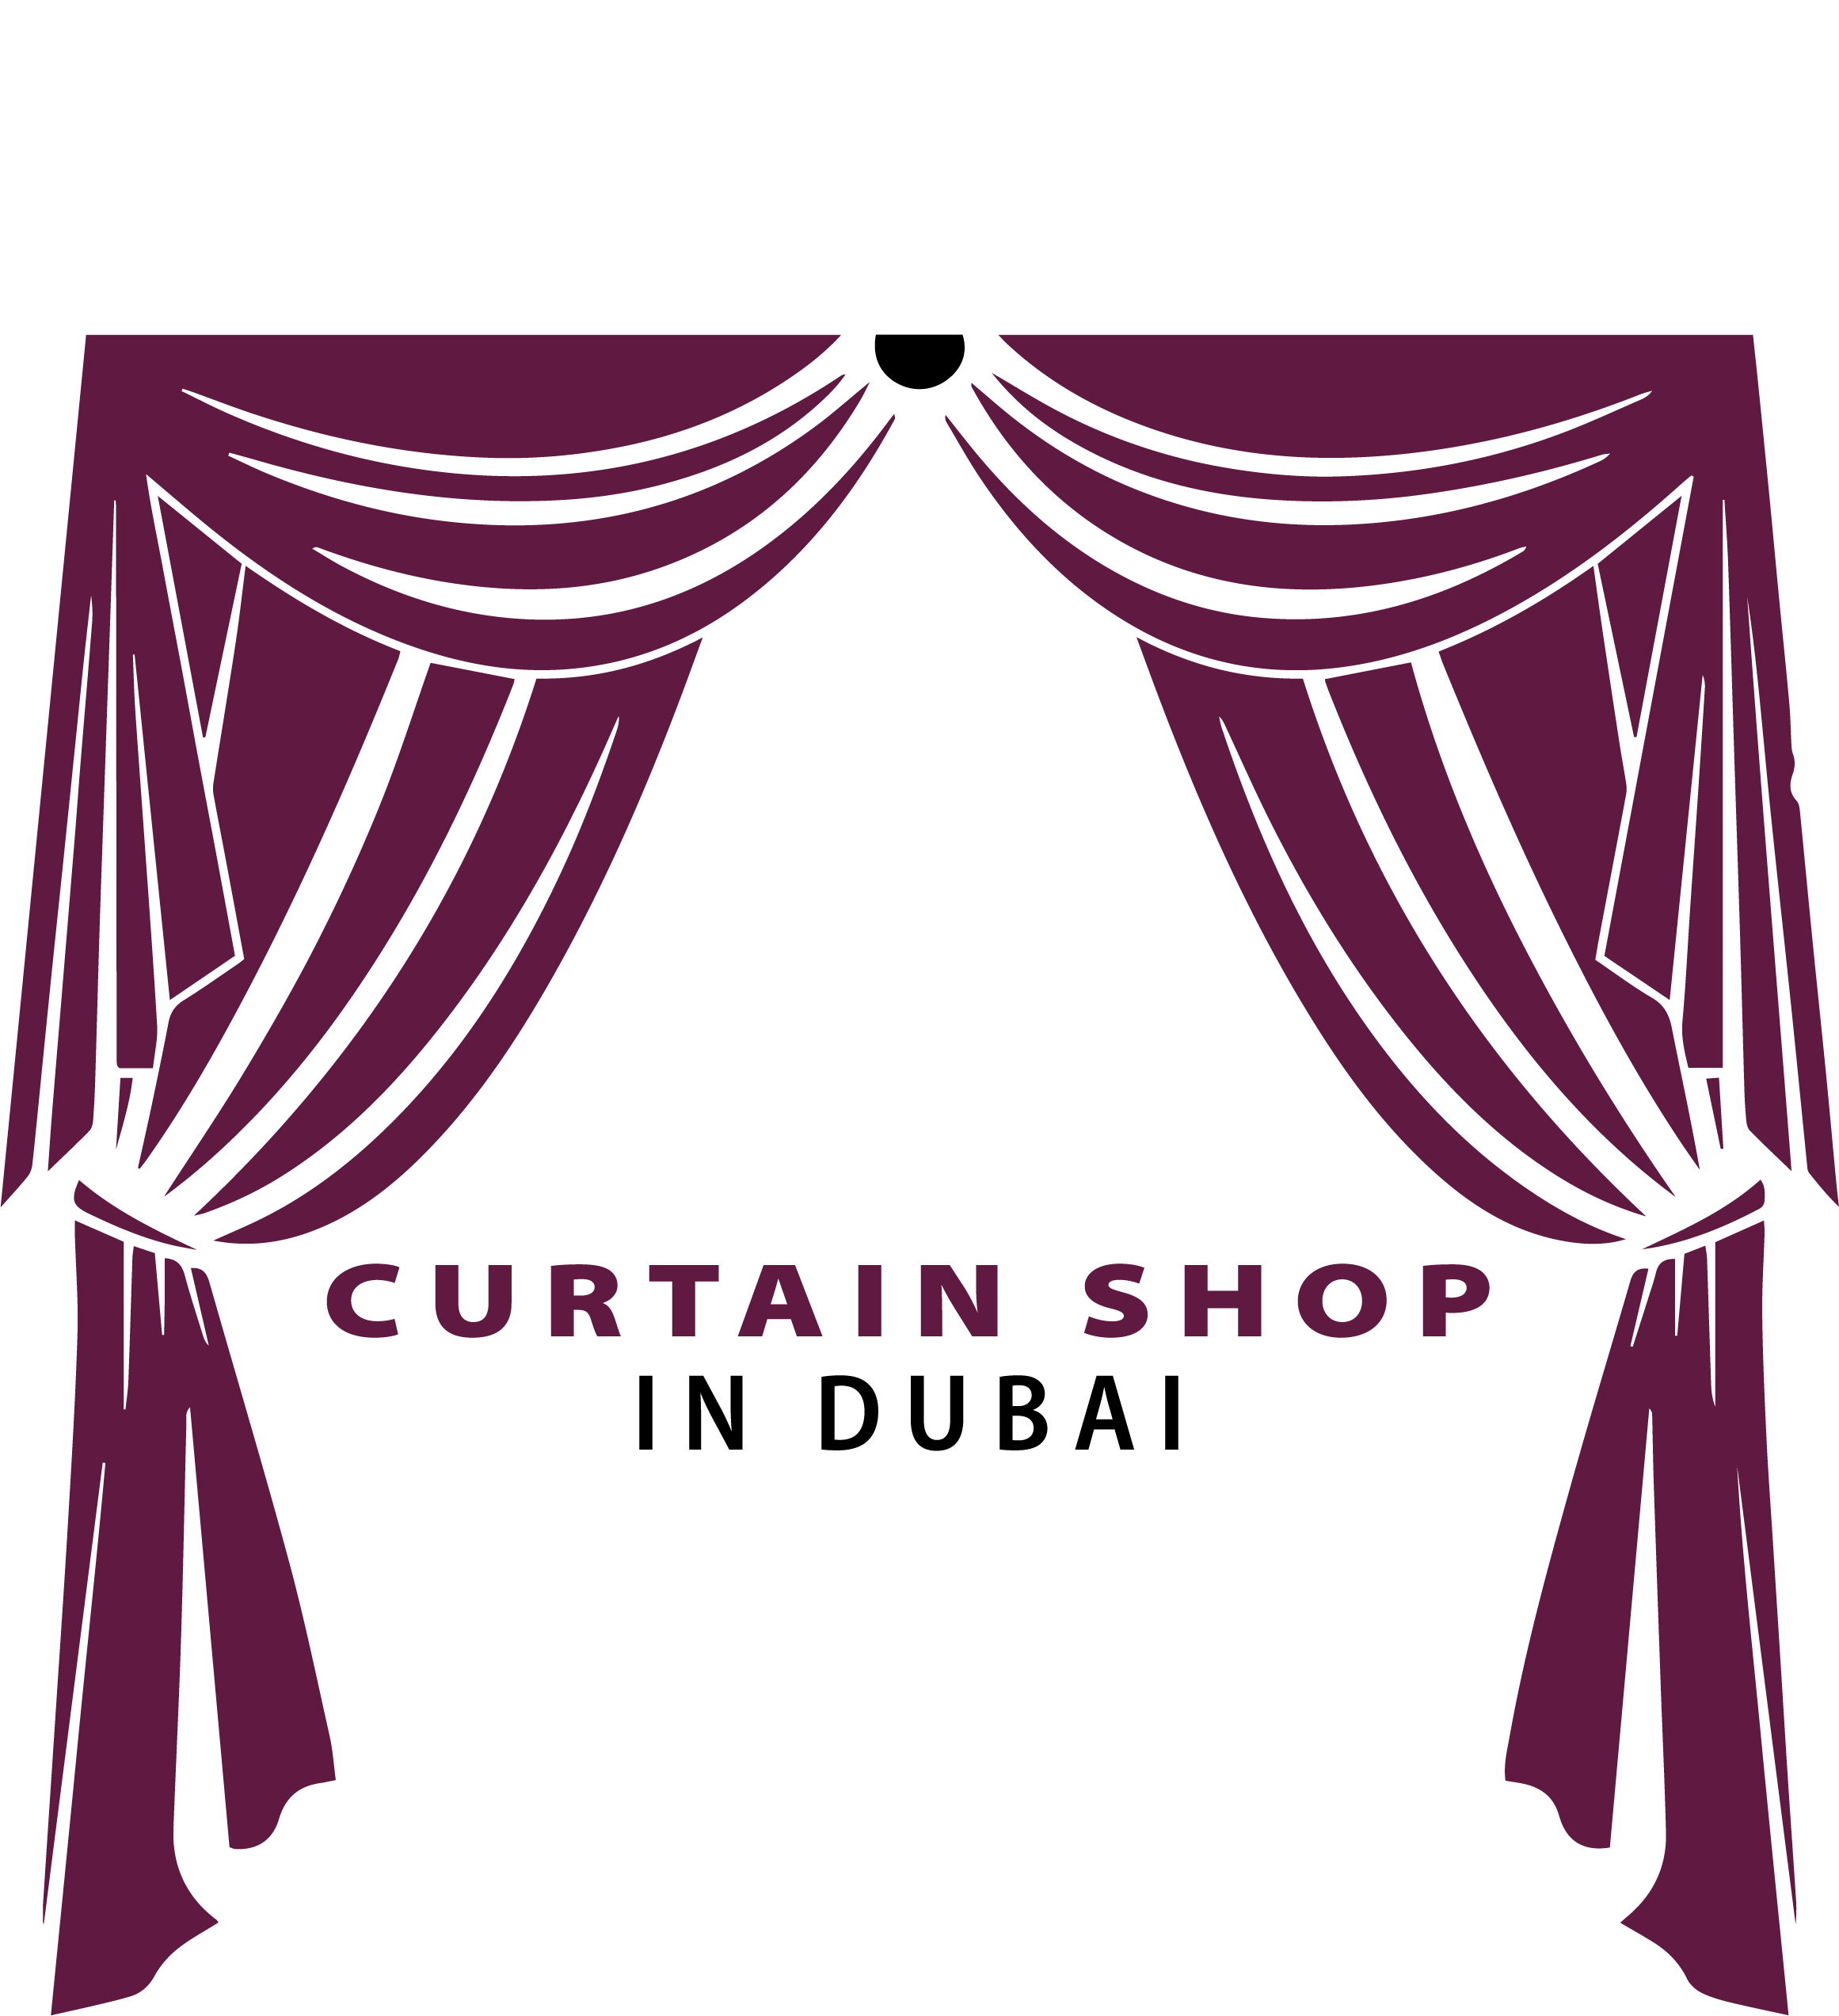 Curtain shop logo bold